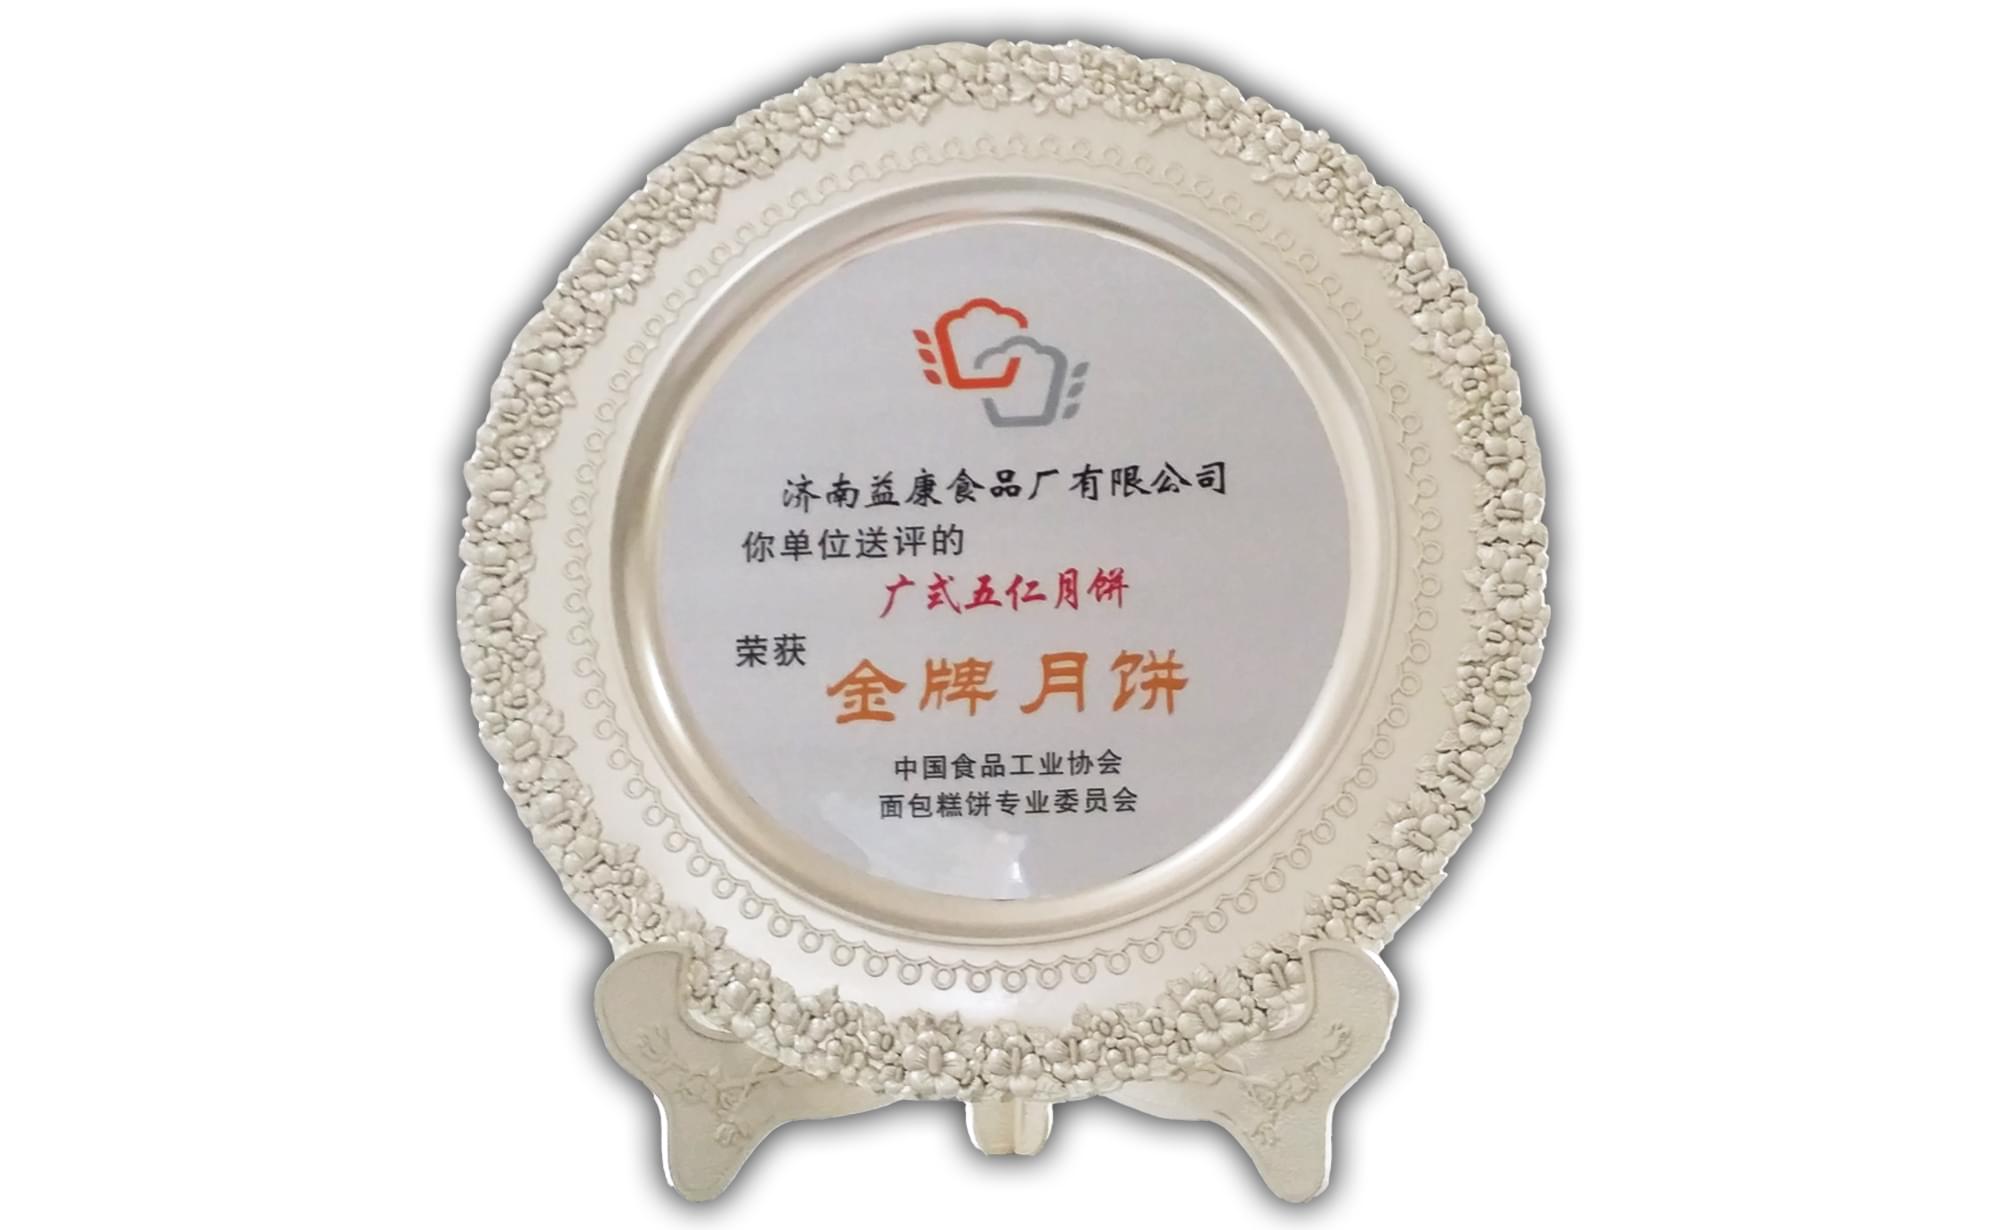 2014年6月广式五仁月饼被评为“金牌月饼”